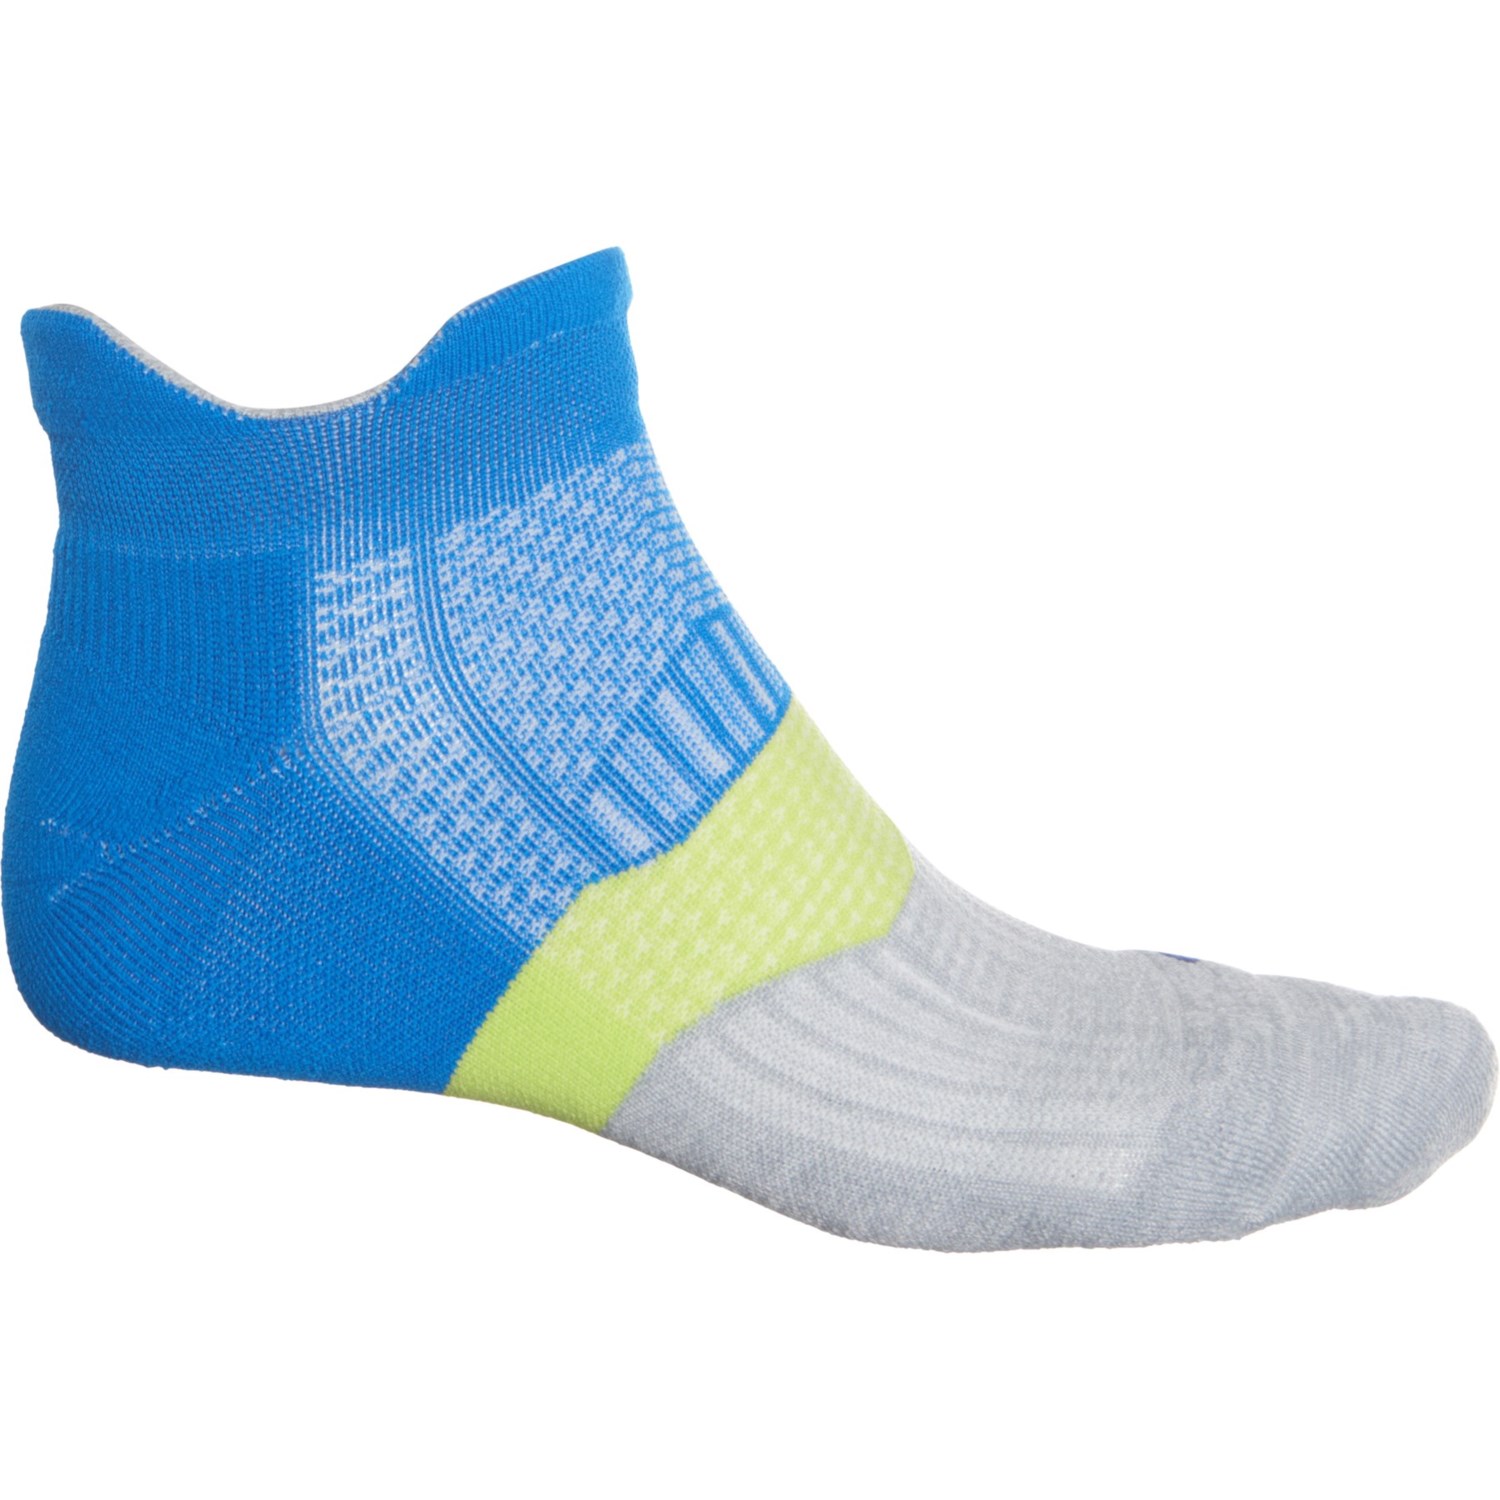 Feetures Elite Cushion Tab Running Socks (For Men And Women)